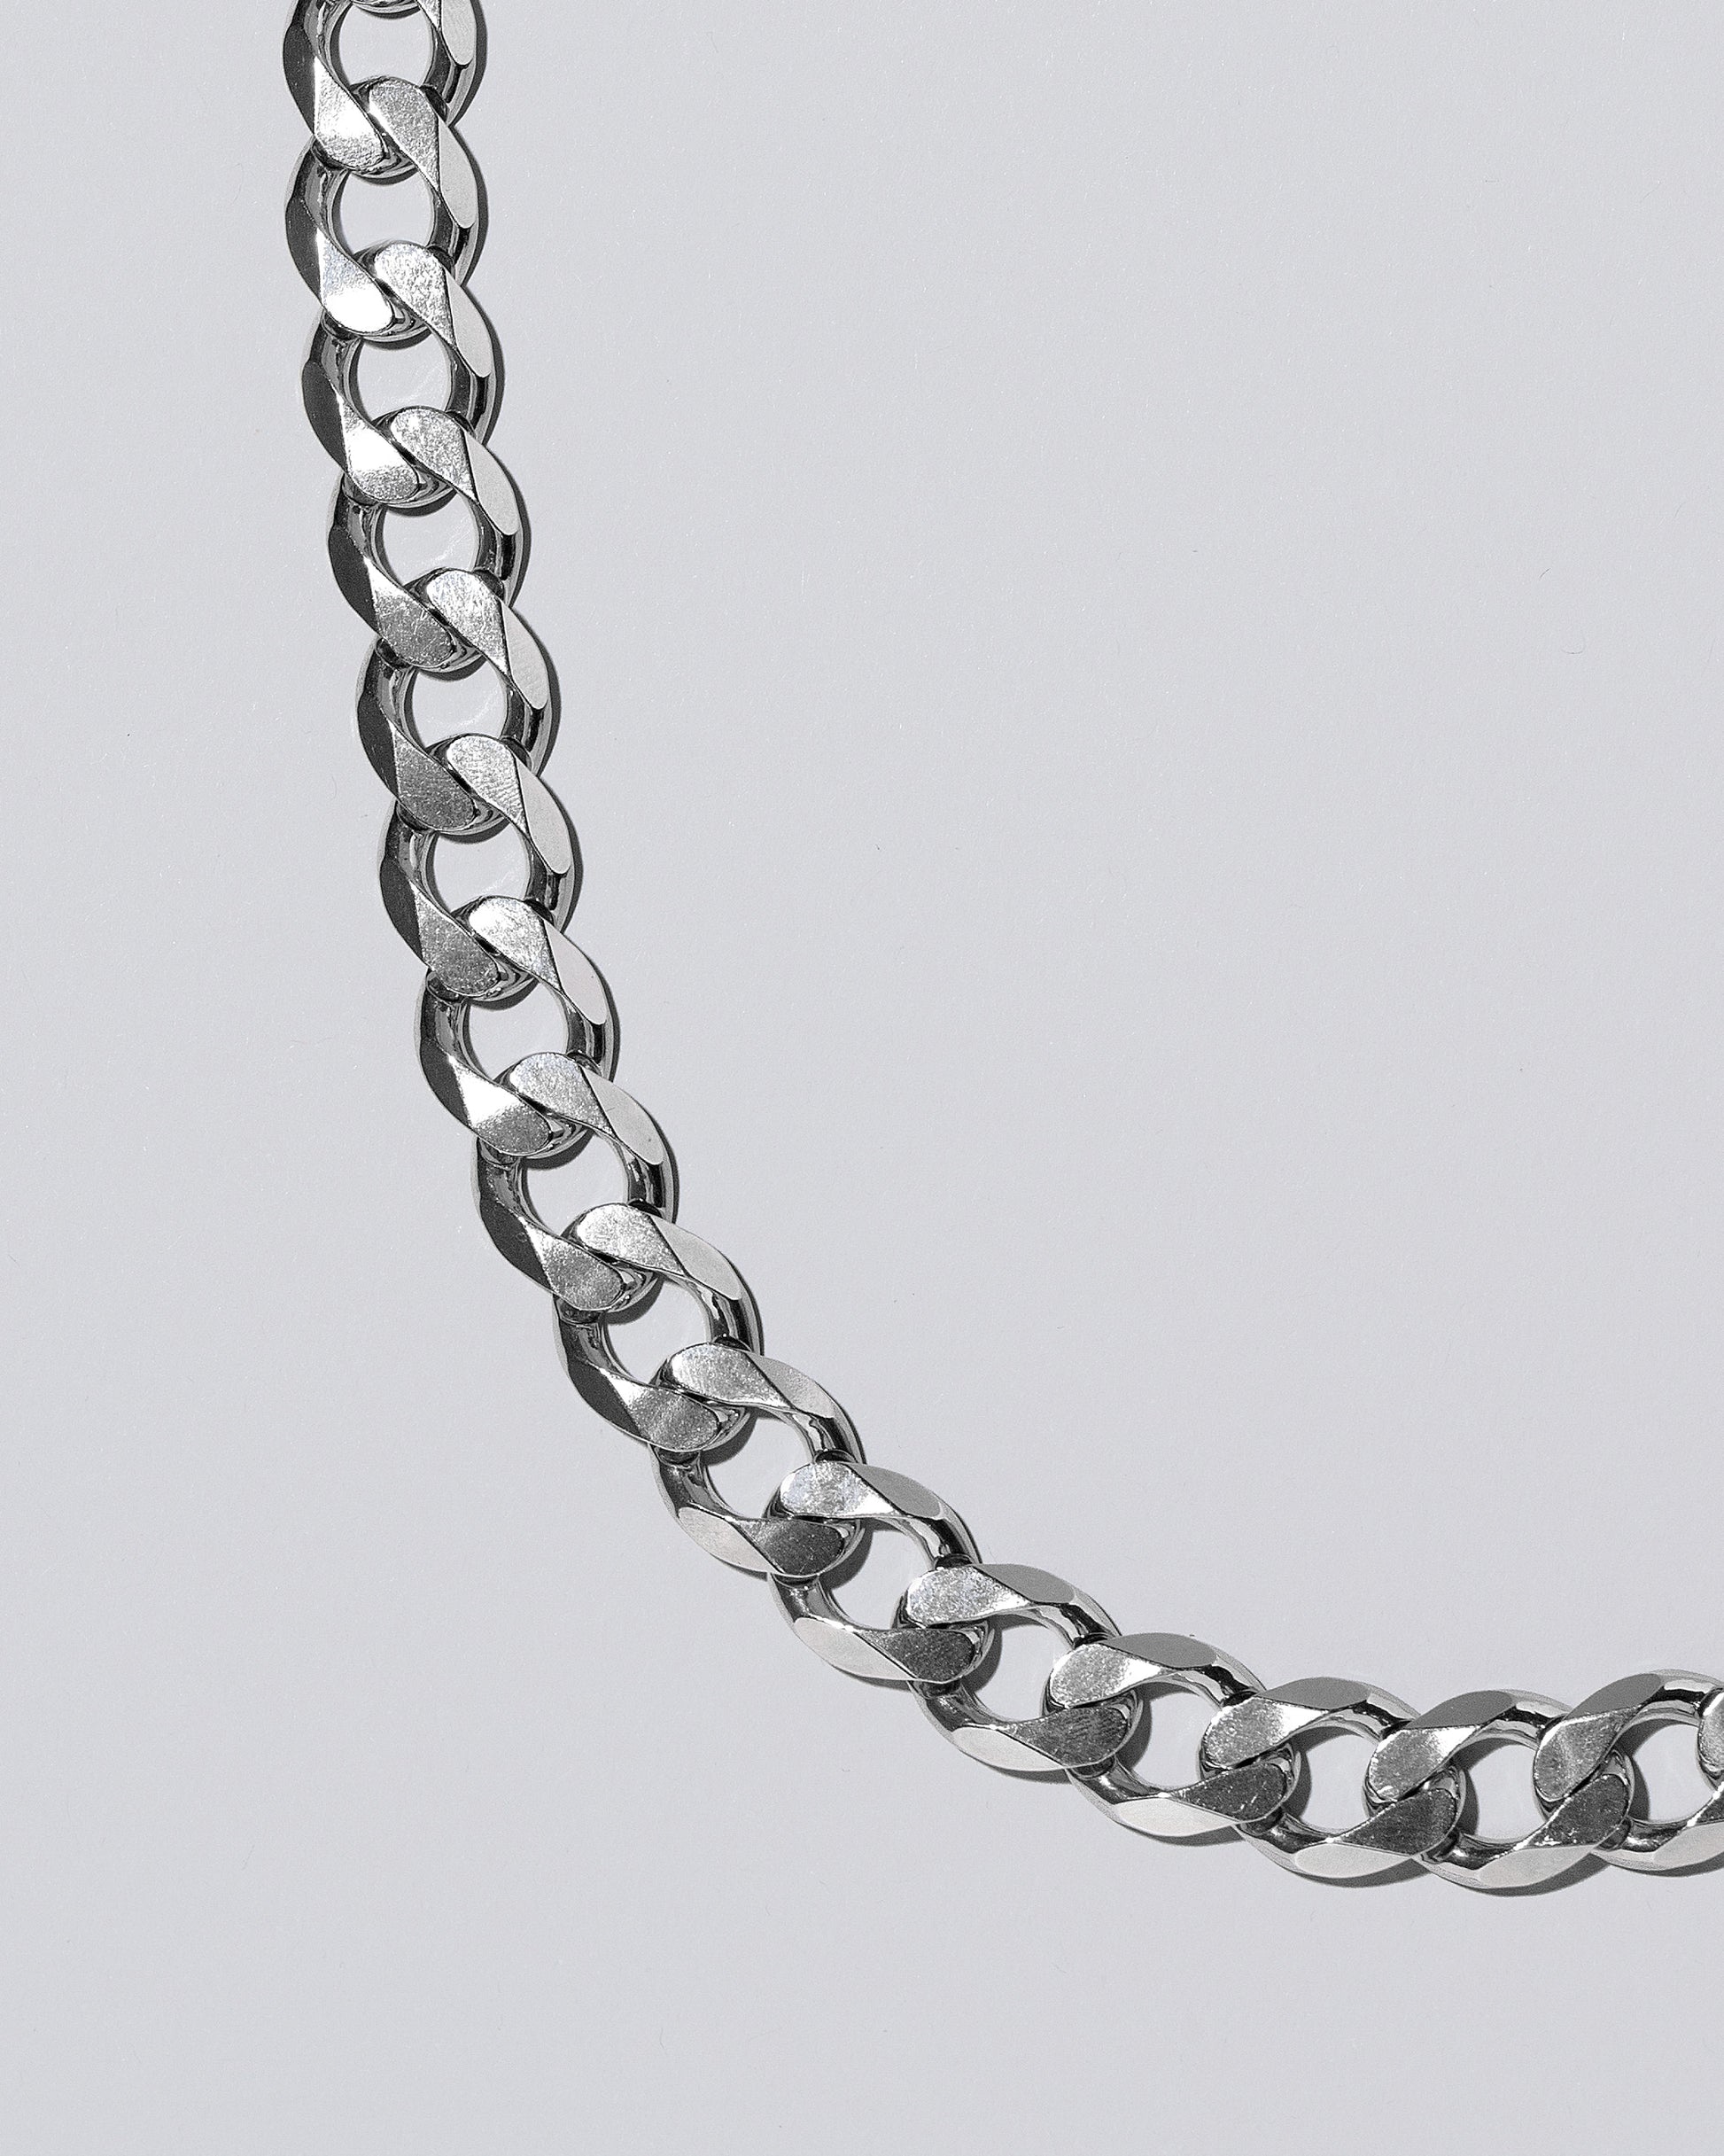 Silver Diamond Curb Chain